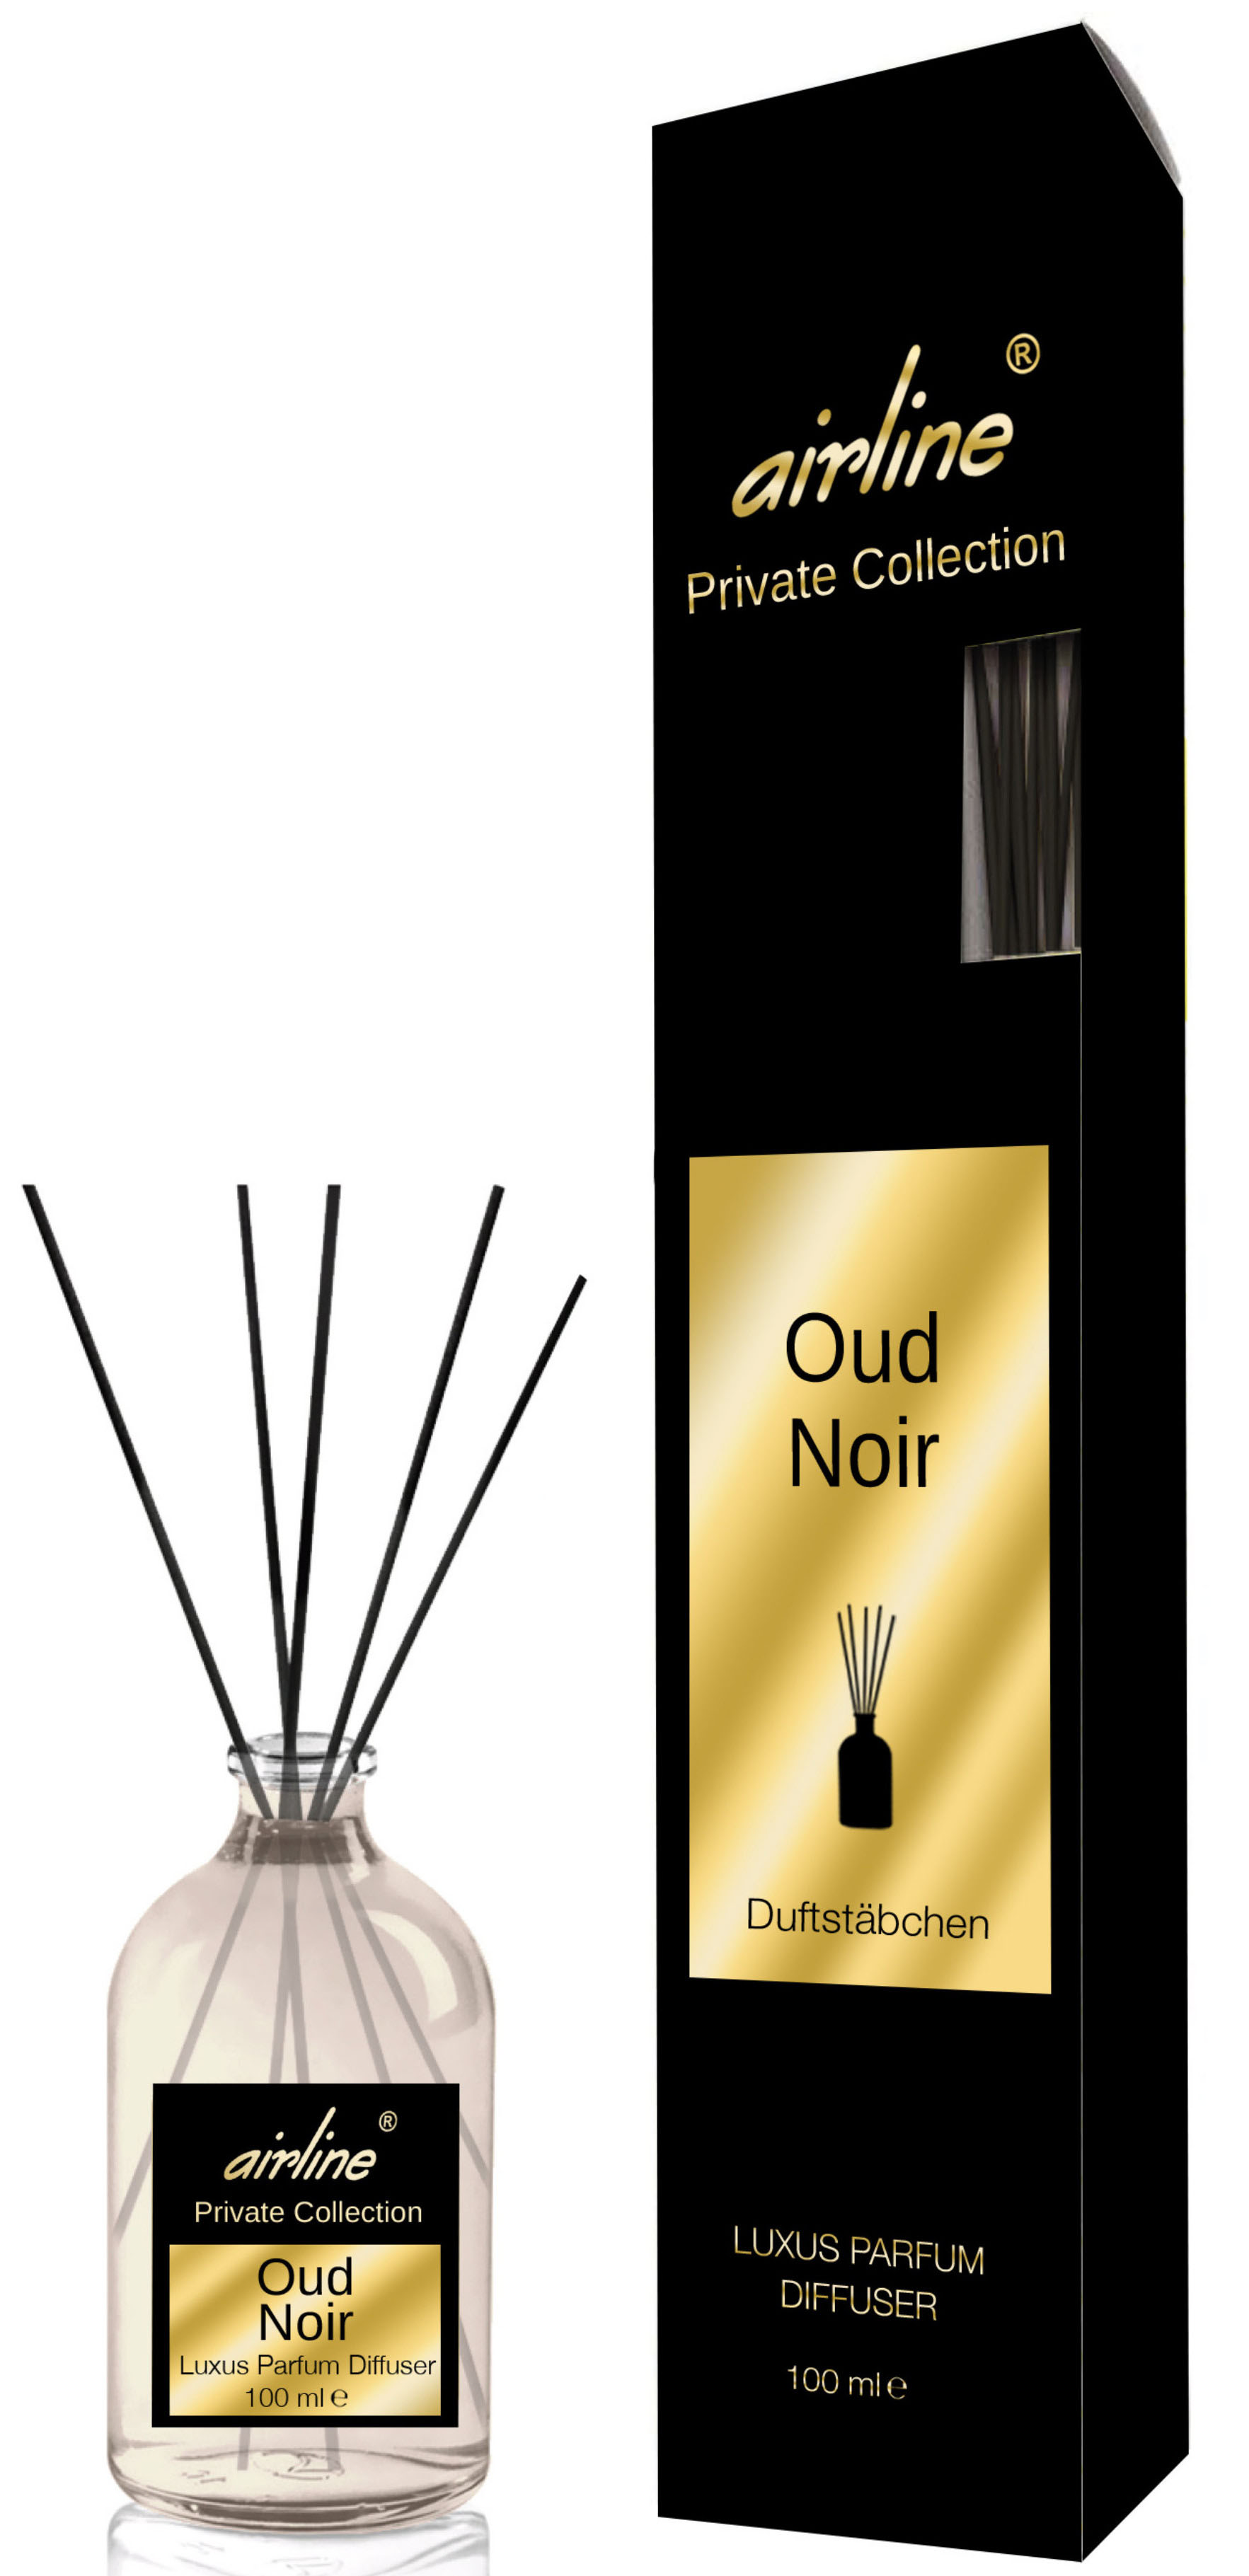 00497 - Private Collection Luxus Parfum Diffuser 100ml-Oud Noir